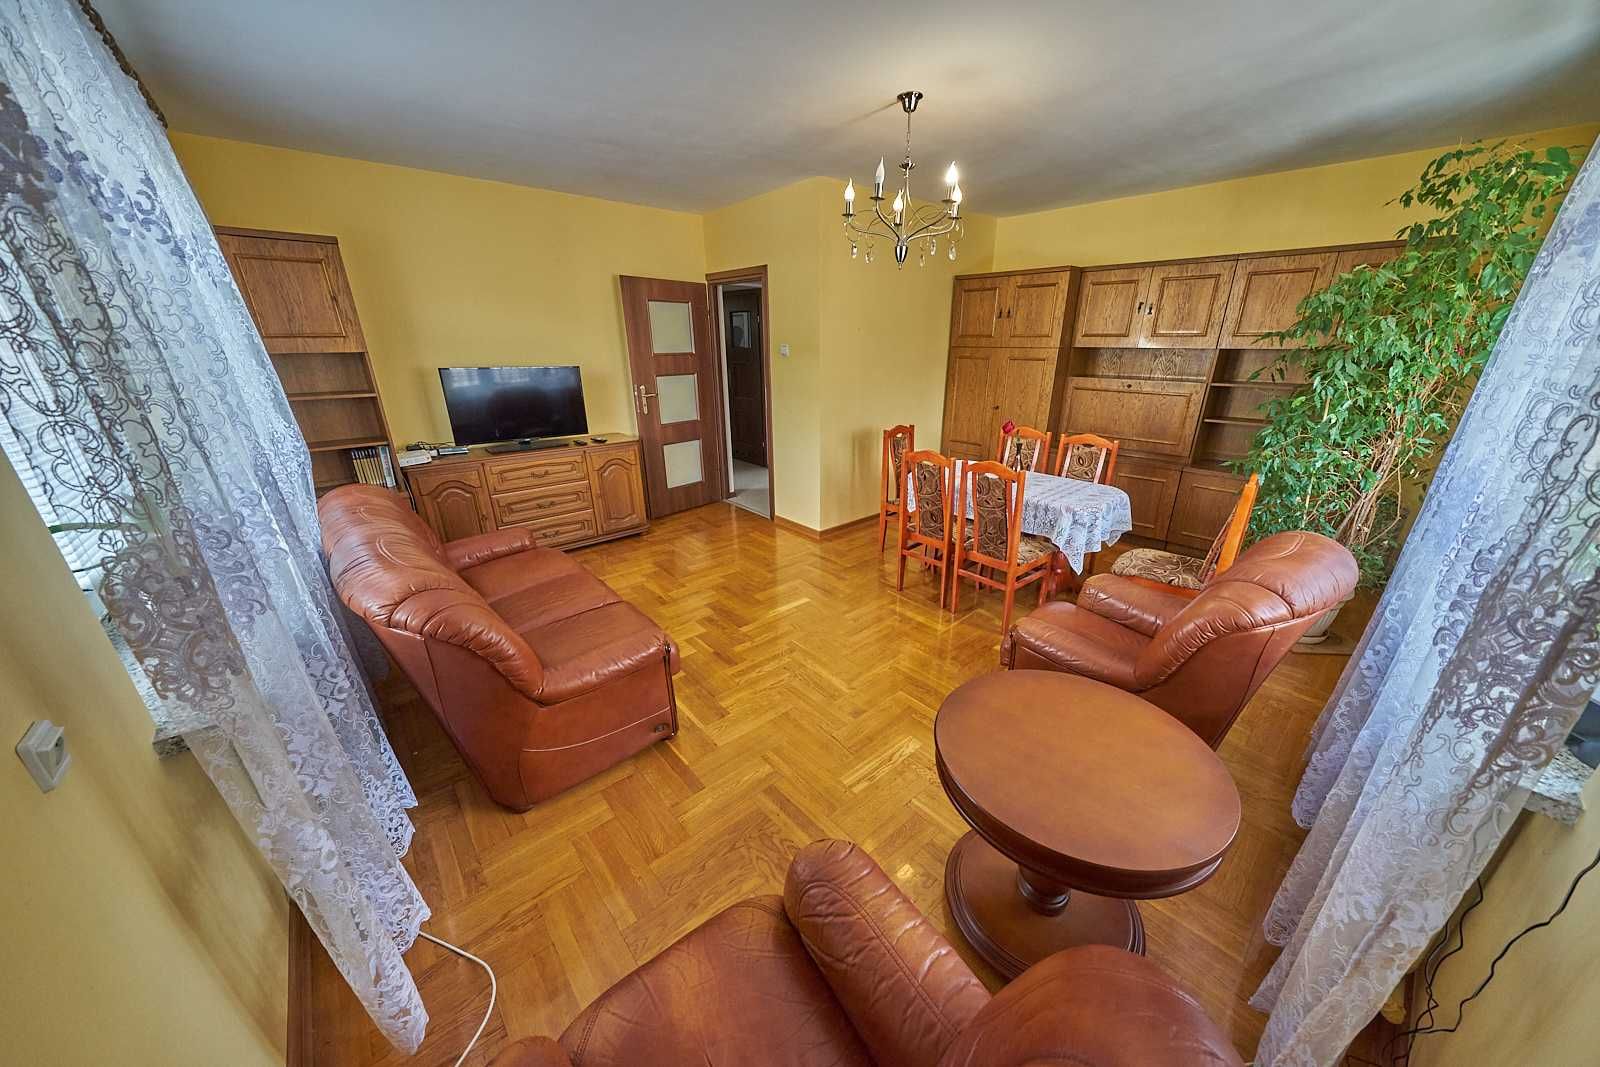 Lublin, LSM duże mieszkanie 85 m2 3-pokojowe